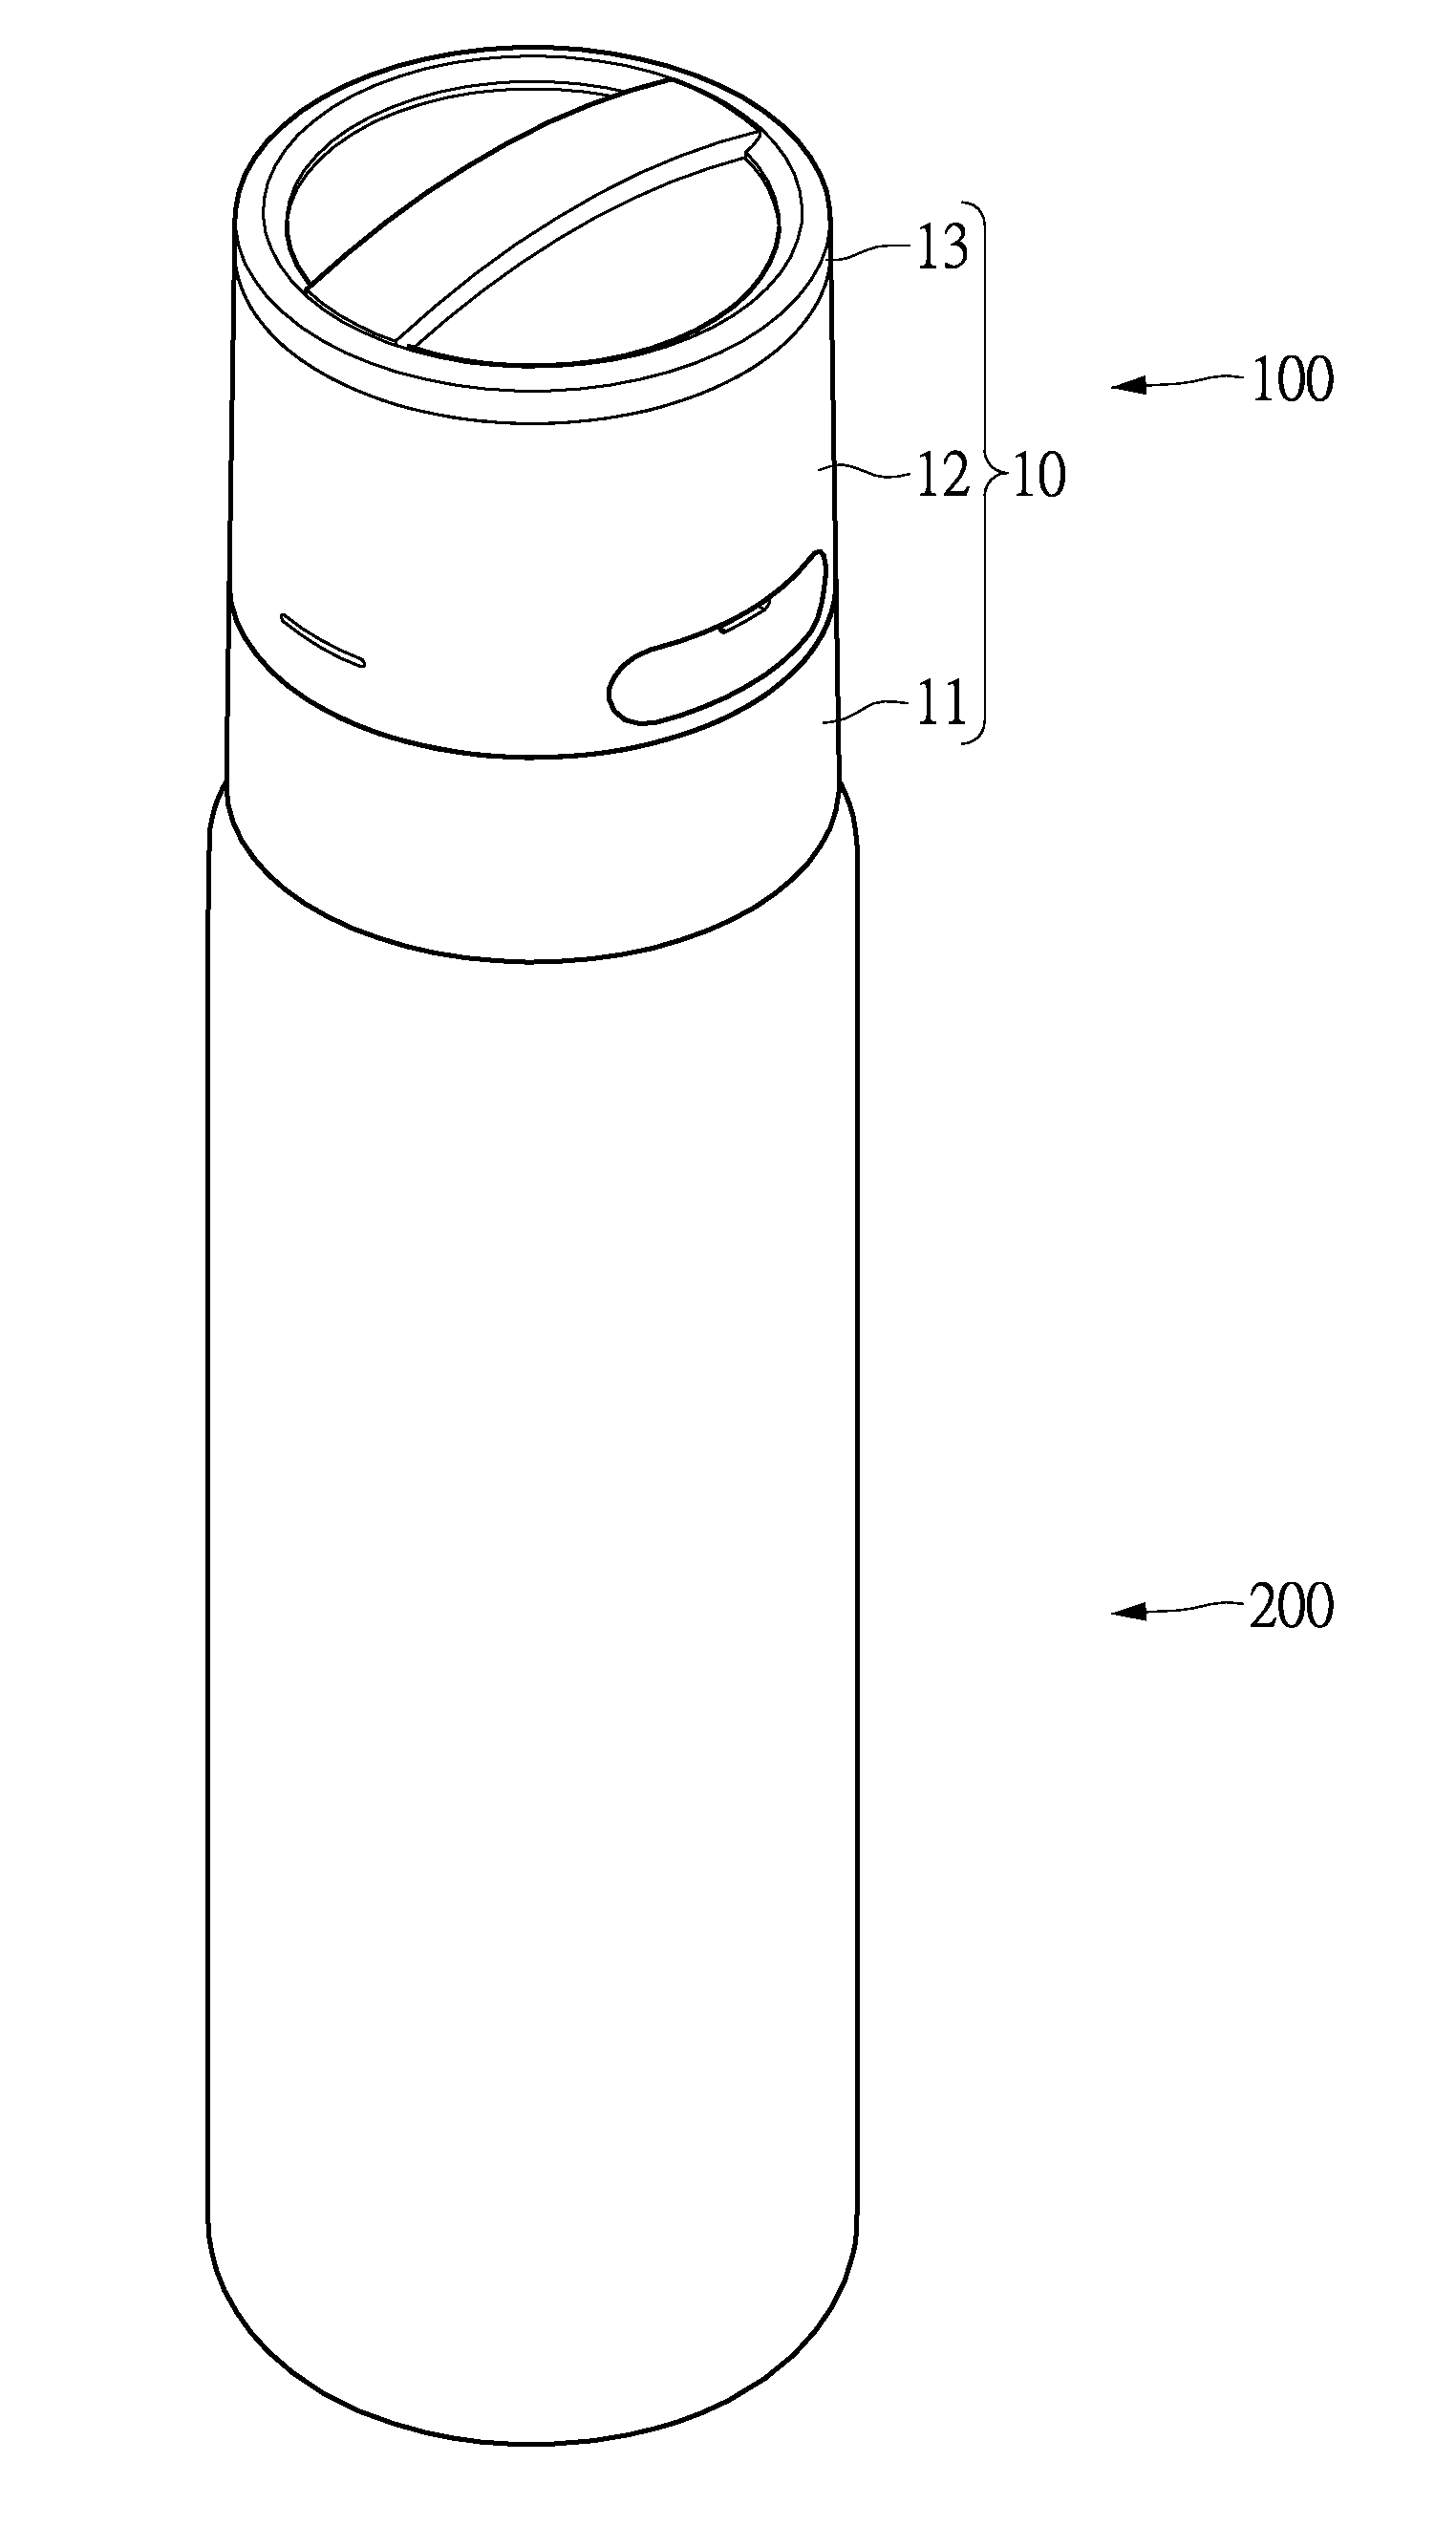 Wireless bottle cap speaker